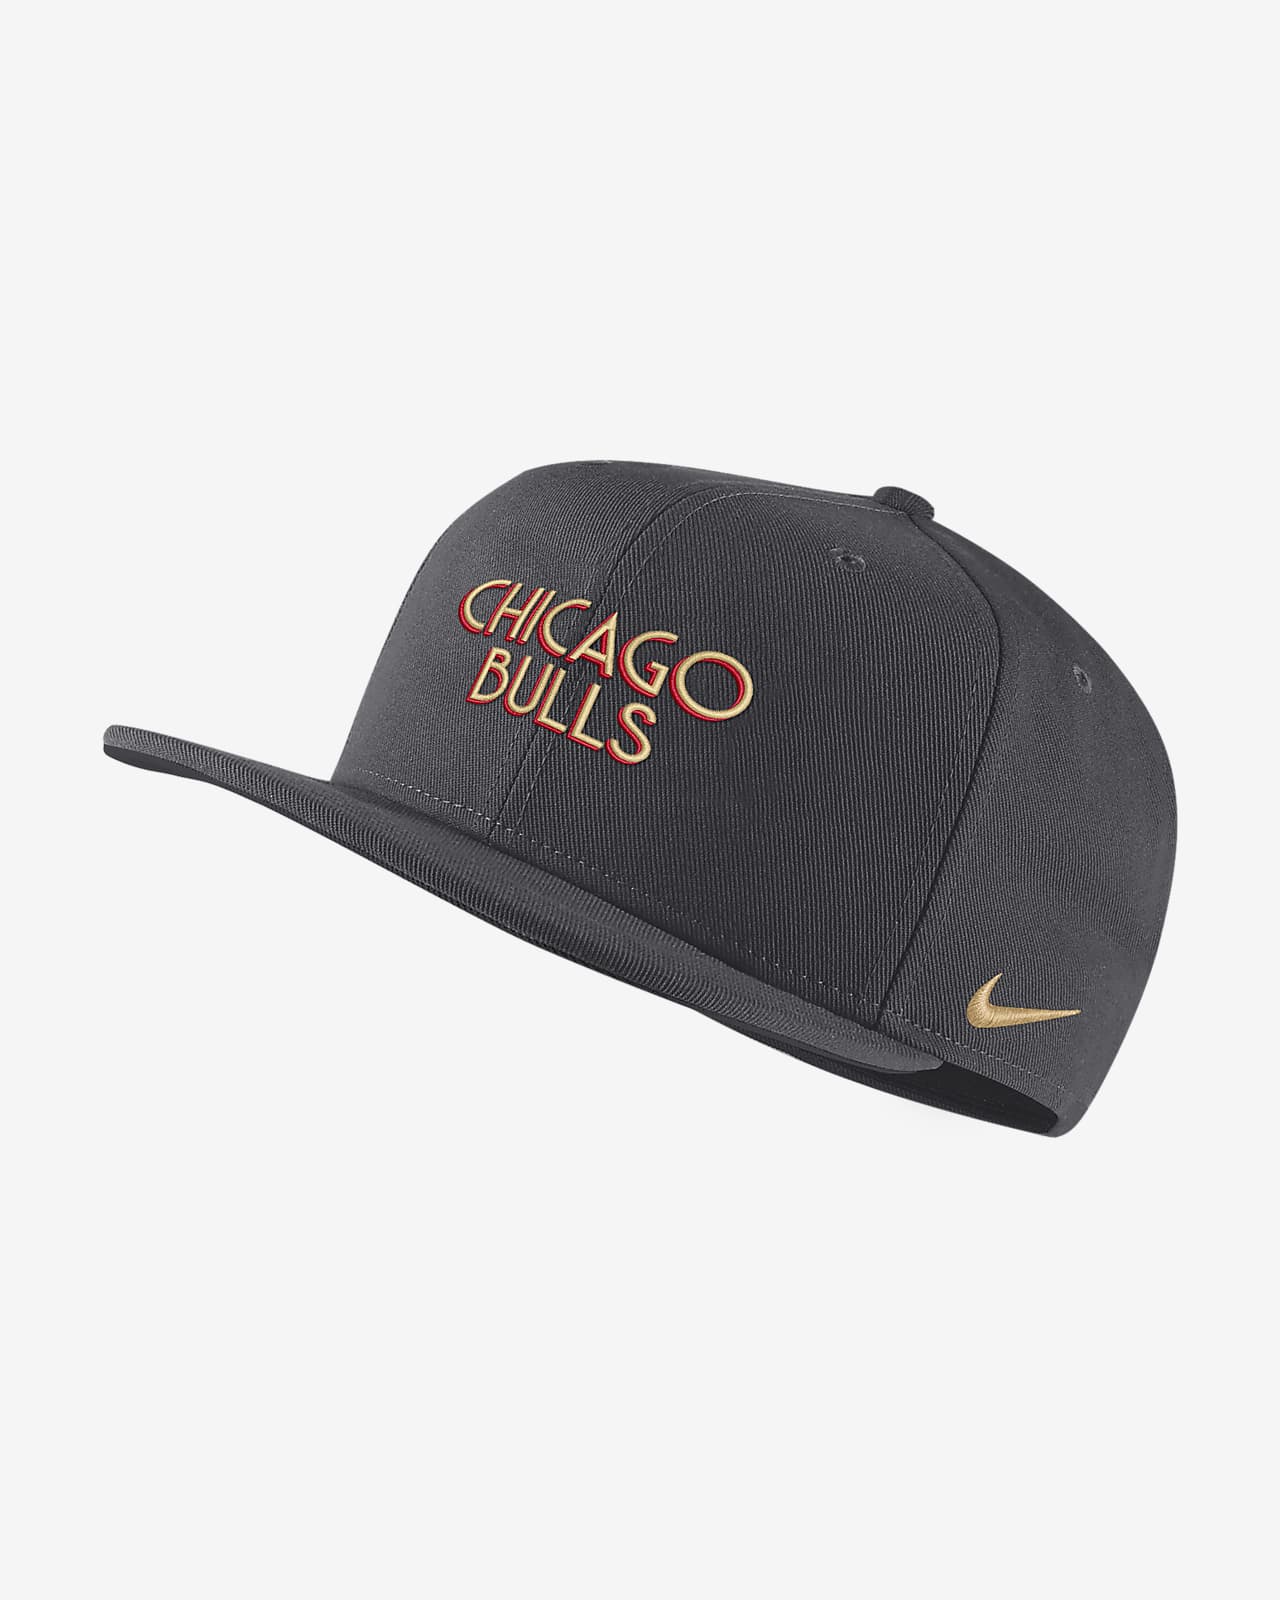 chicago bulls city edition hat